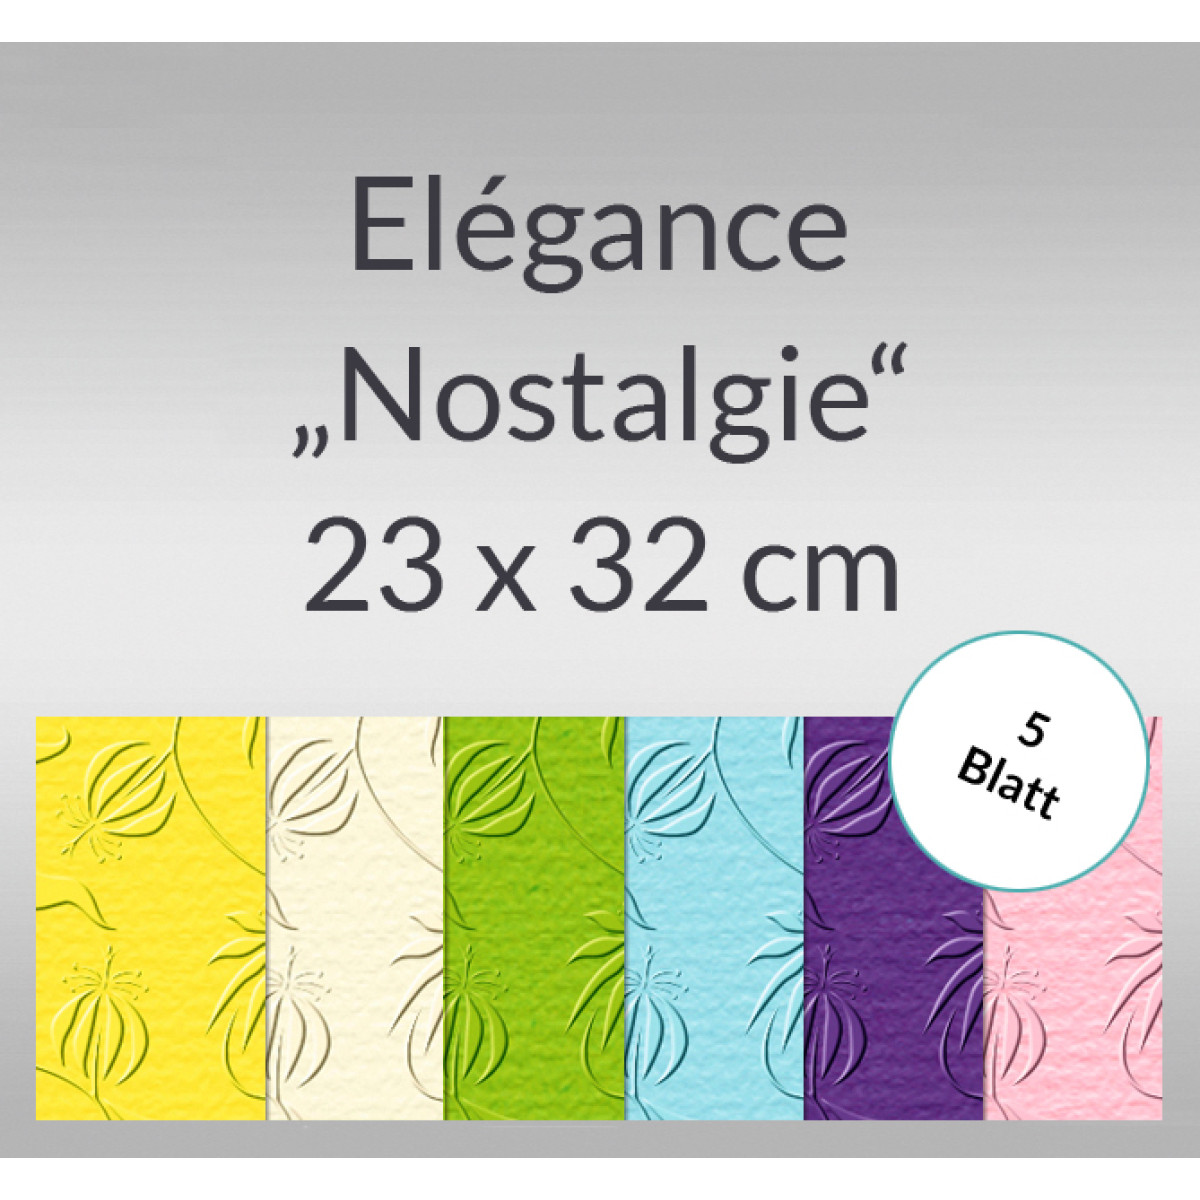 Elegance "Nostalgie" 220 g/qm 23 x 32 cm - 5 Blatt